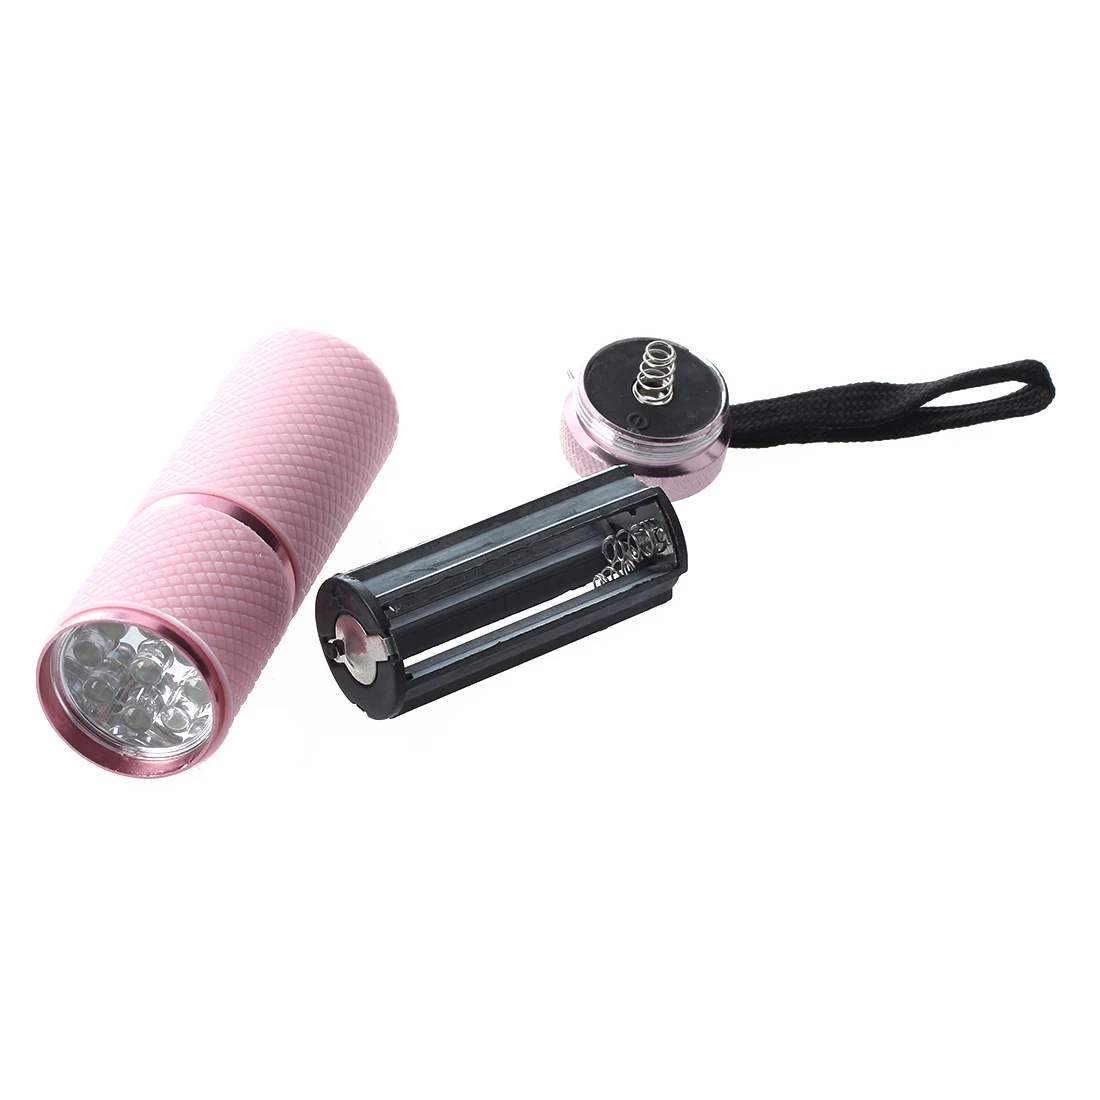 Уличный мини-фонарик с 9 светодиодами, покрытый розовой резиной.